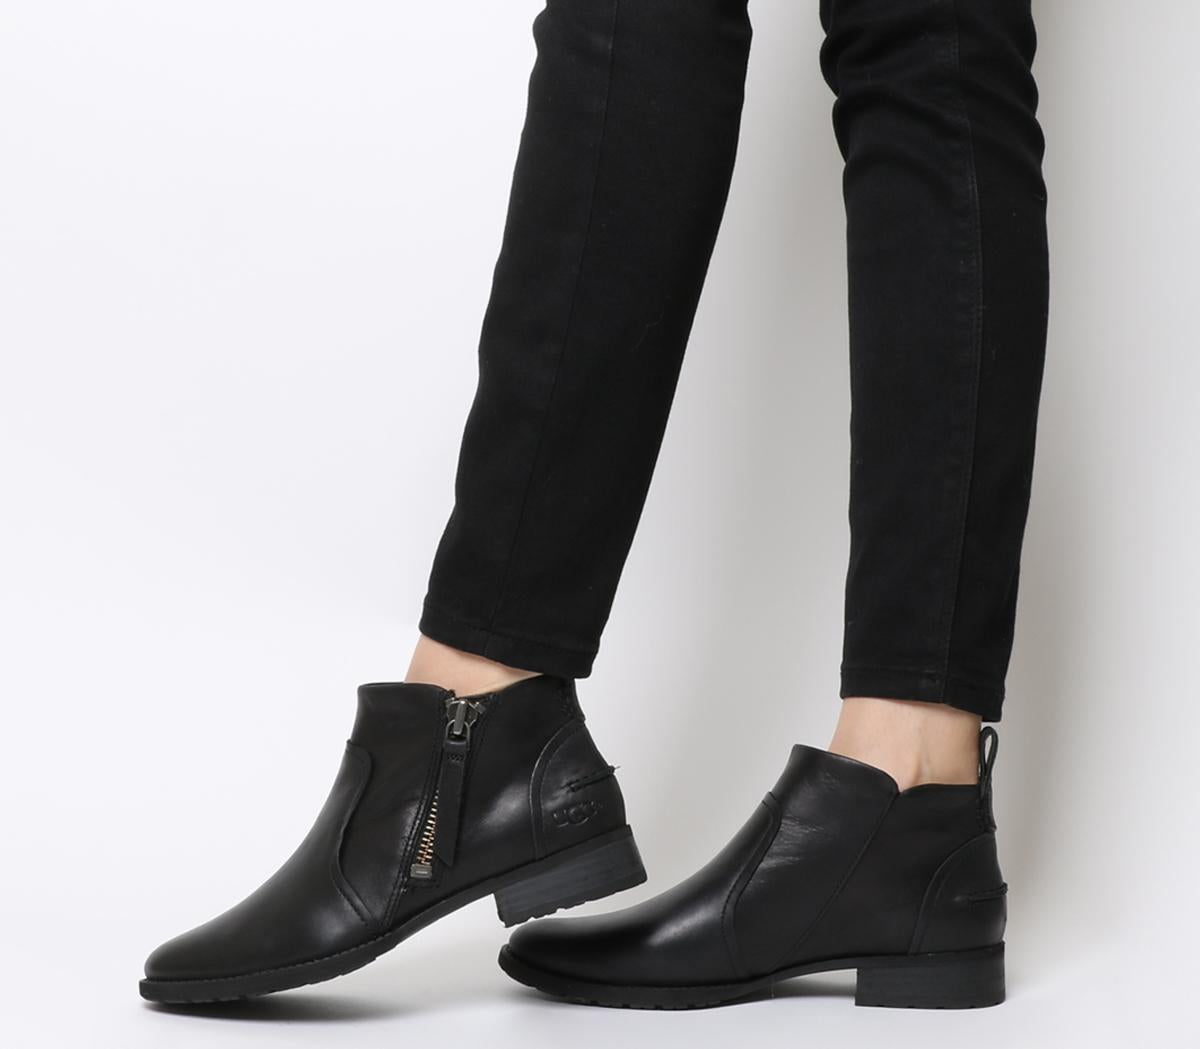 ugg black aureo boots